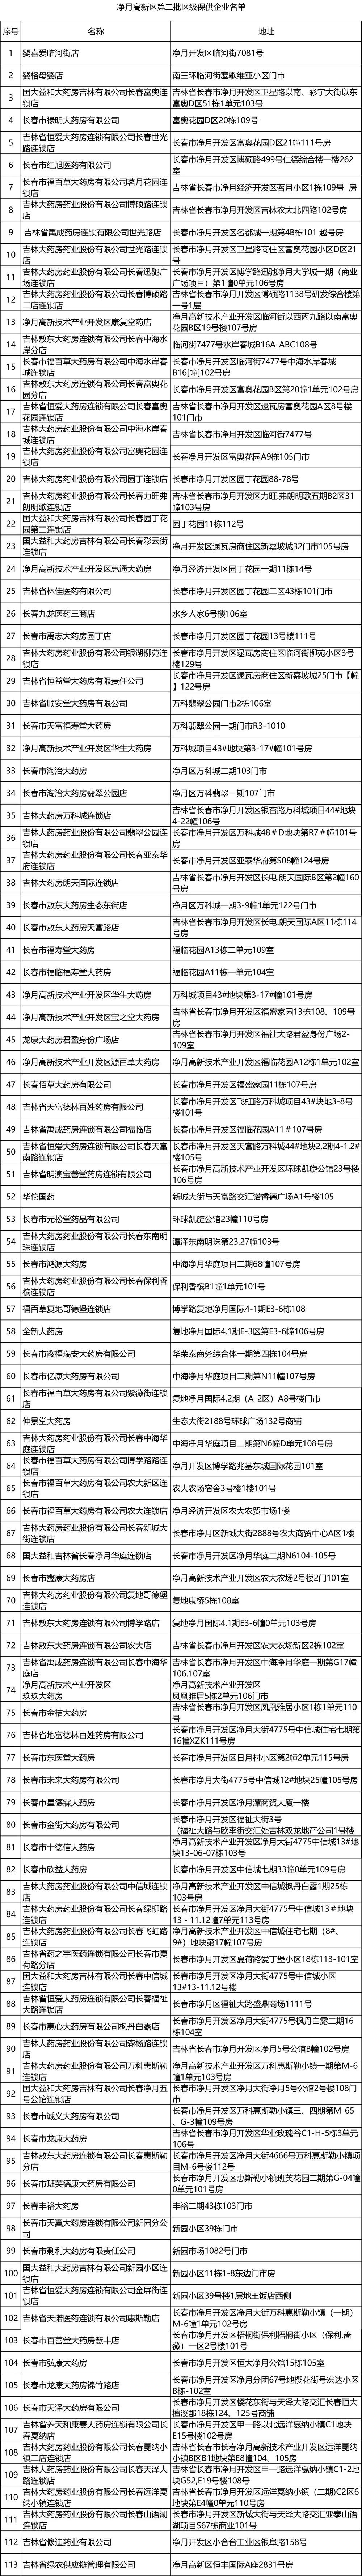 长春市净月区第二批保供企业名单